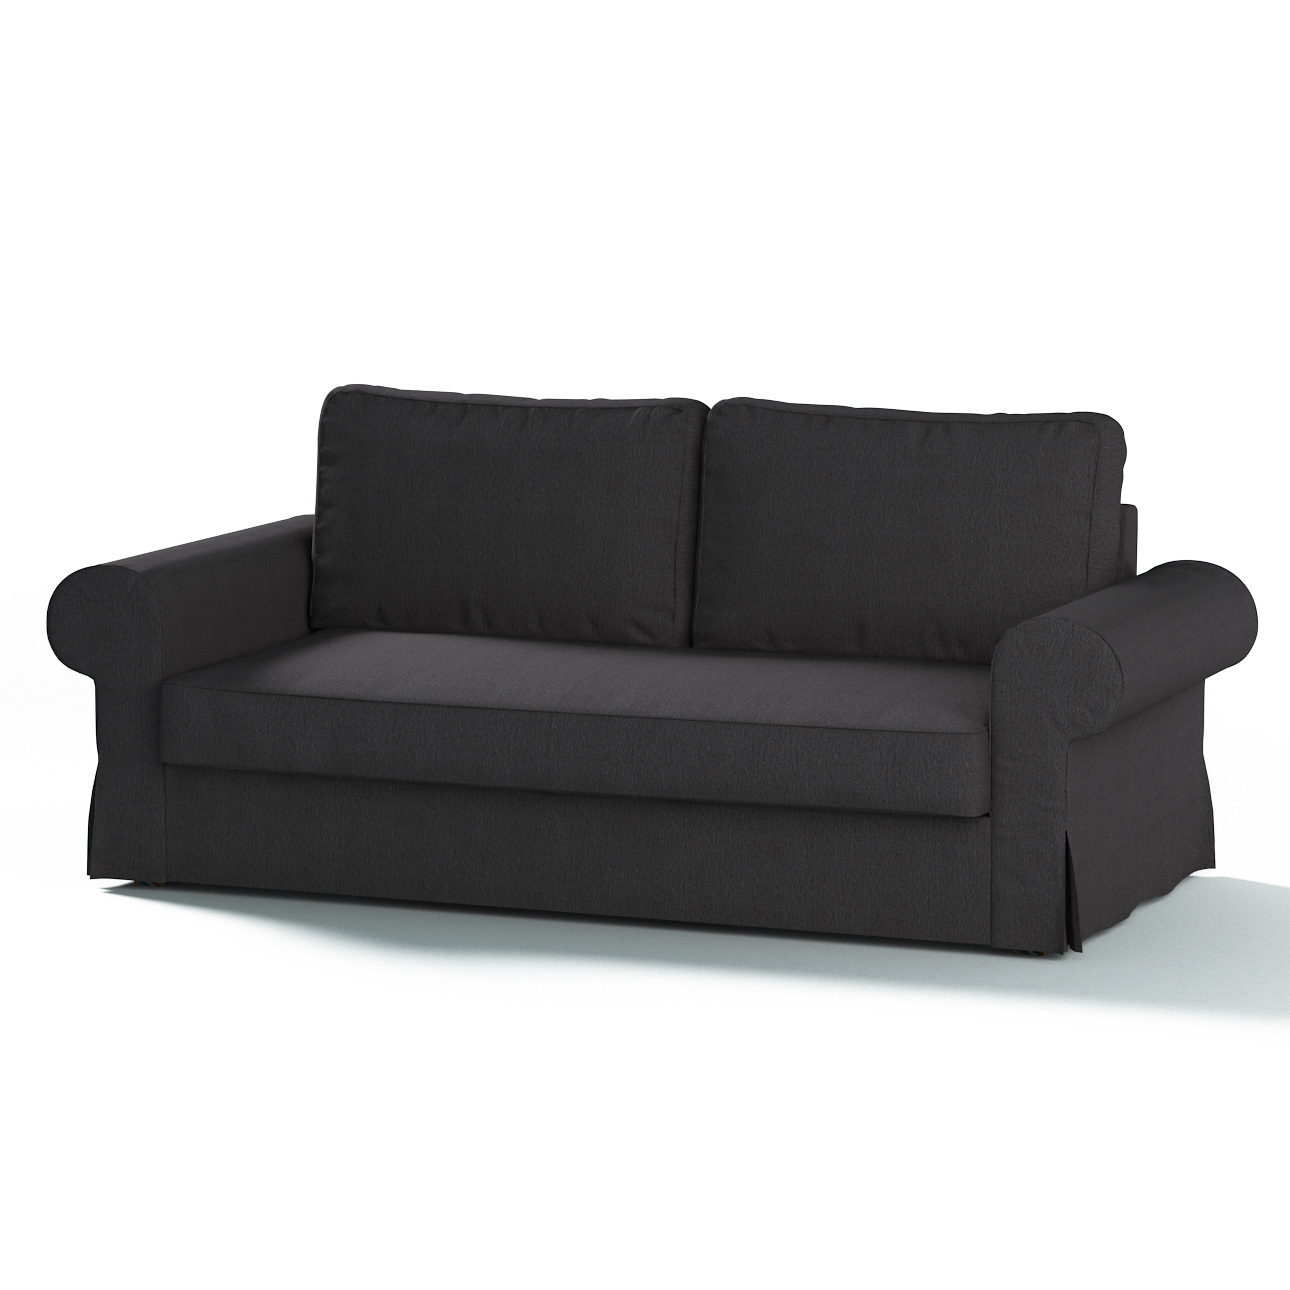 Bezug für Backabro 3-Sitzer Sofa ausklappbar, stahlgrau, Bezug für Backabro günstig online kaufen